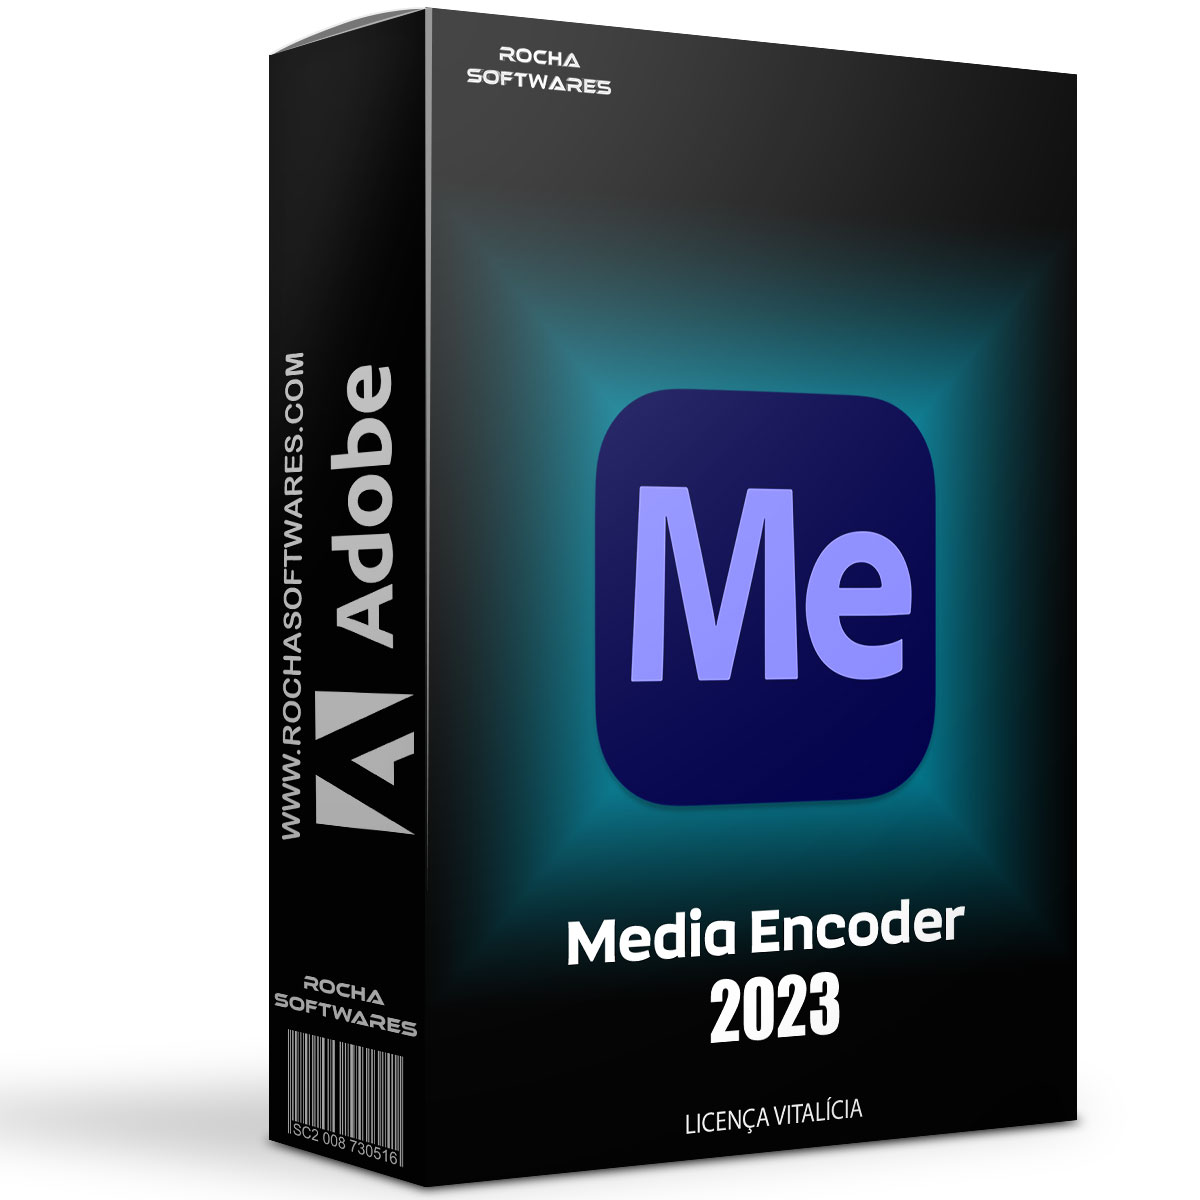 Tải Media Encoder 2023 dùng vĩnh viễn | Hướng dẫn cài đặt